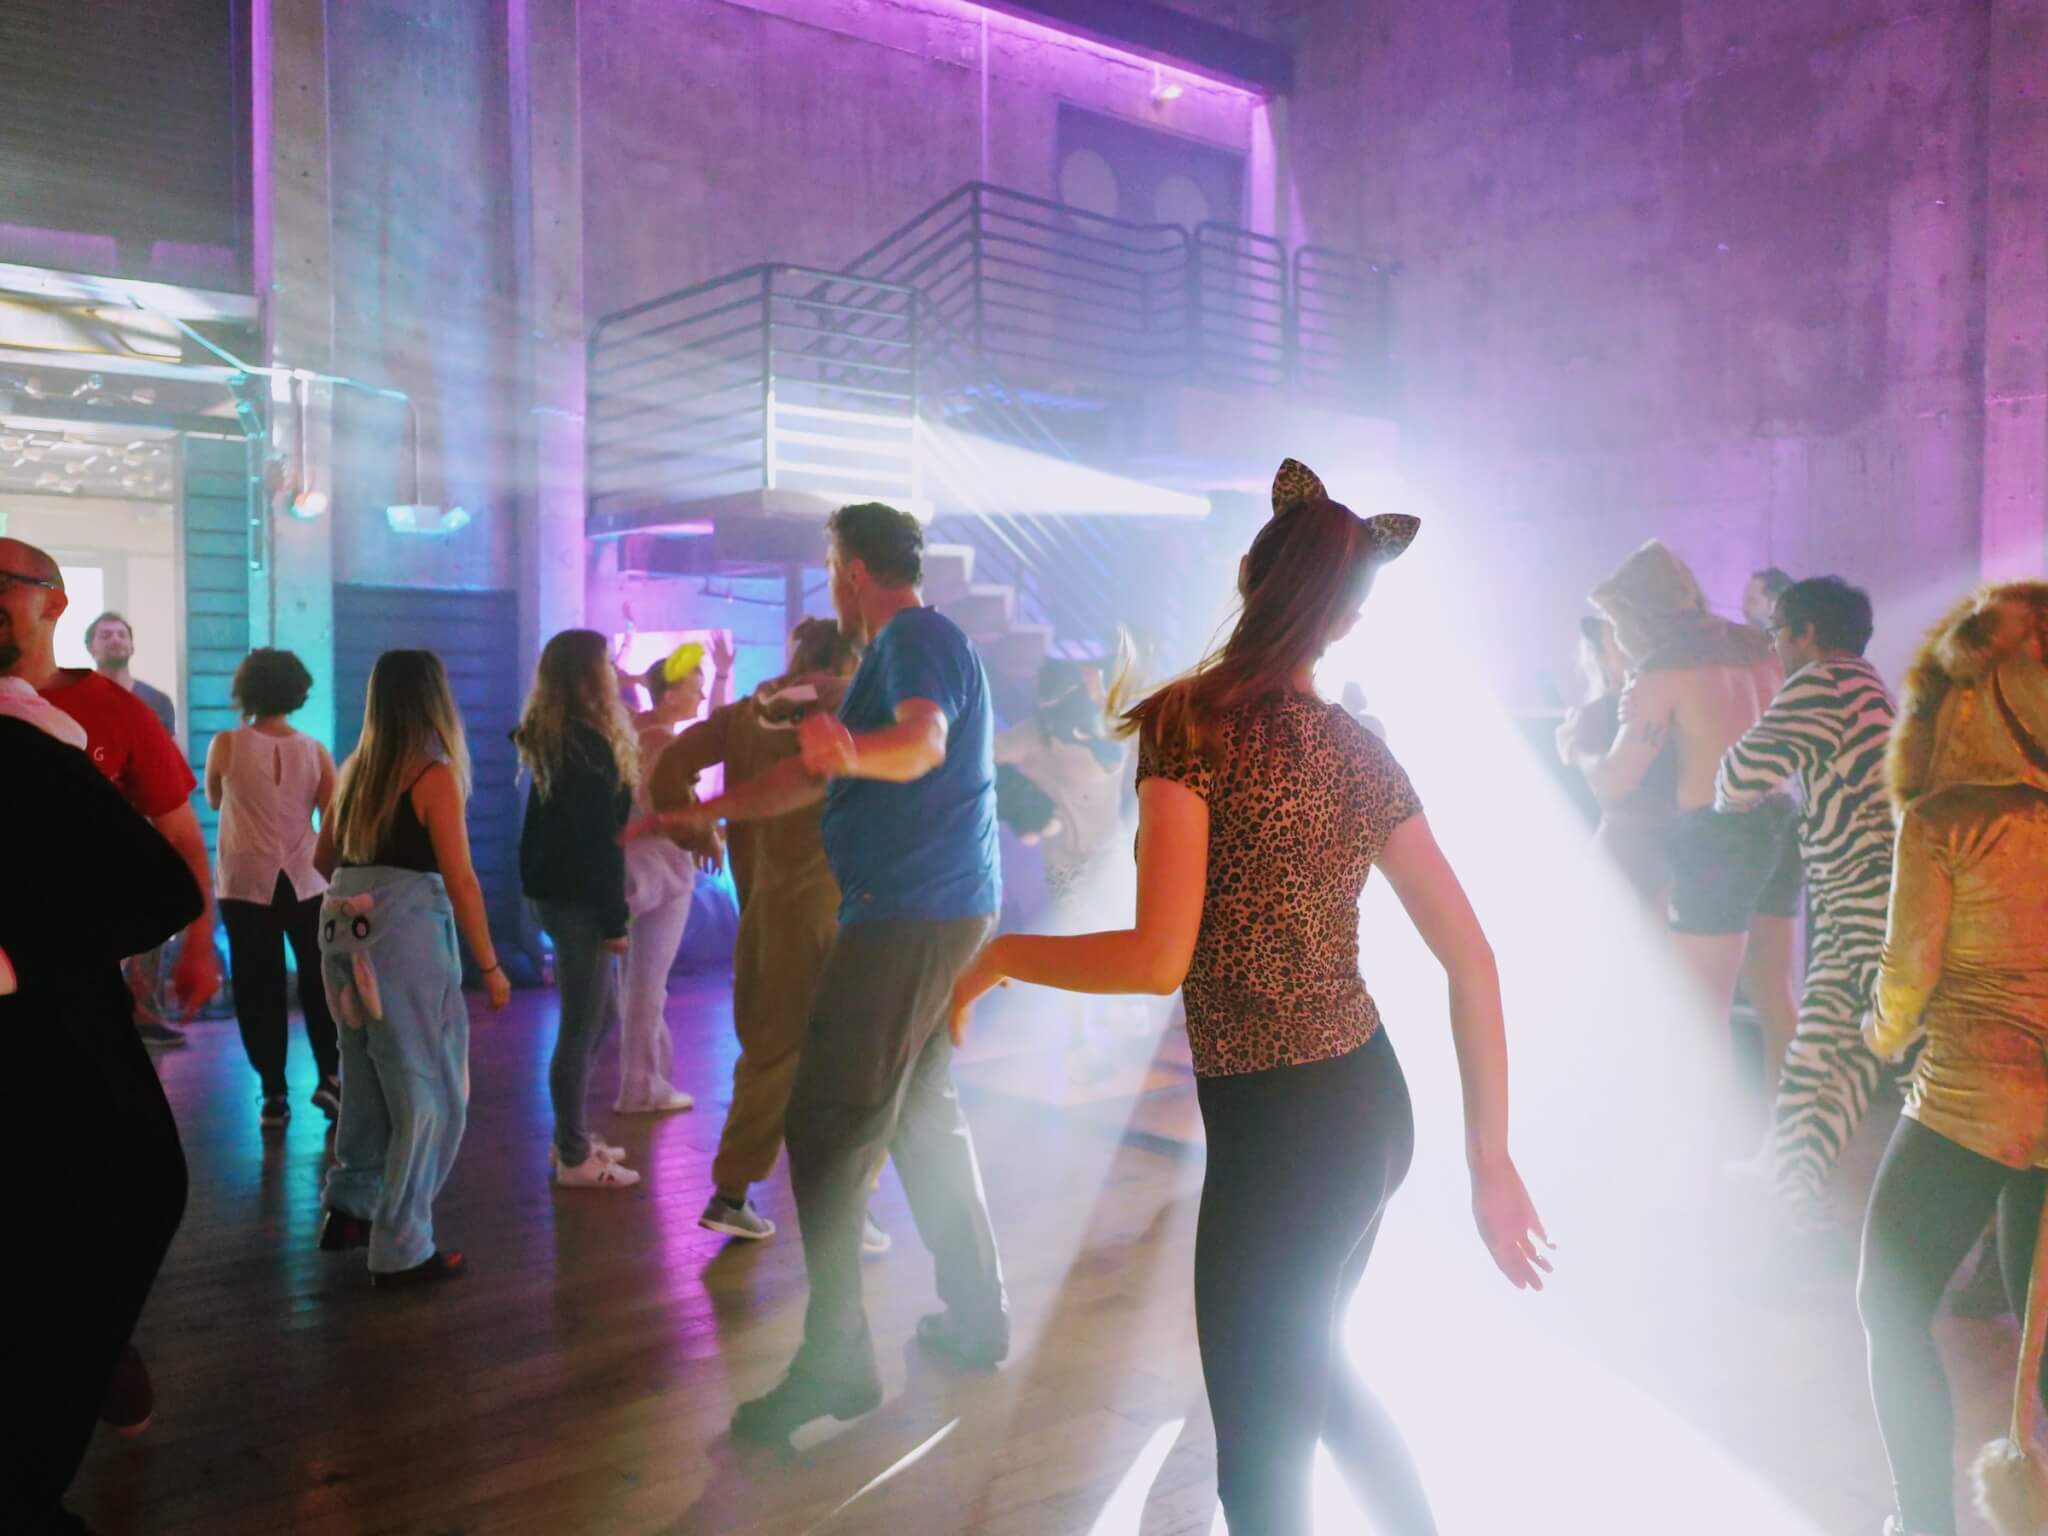 Cincinnati DJs leading a group of people dancing in a dark room.